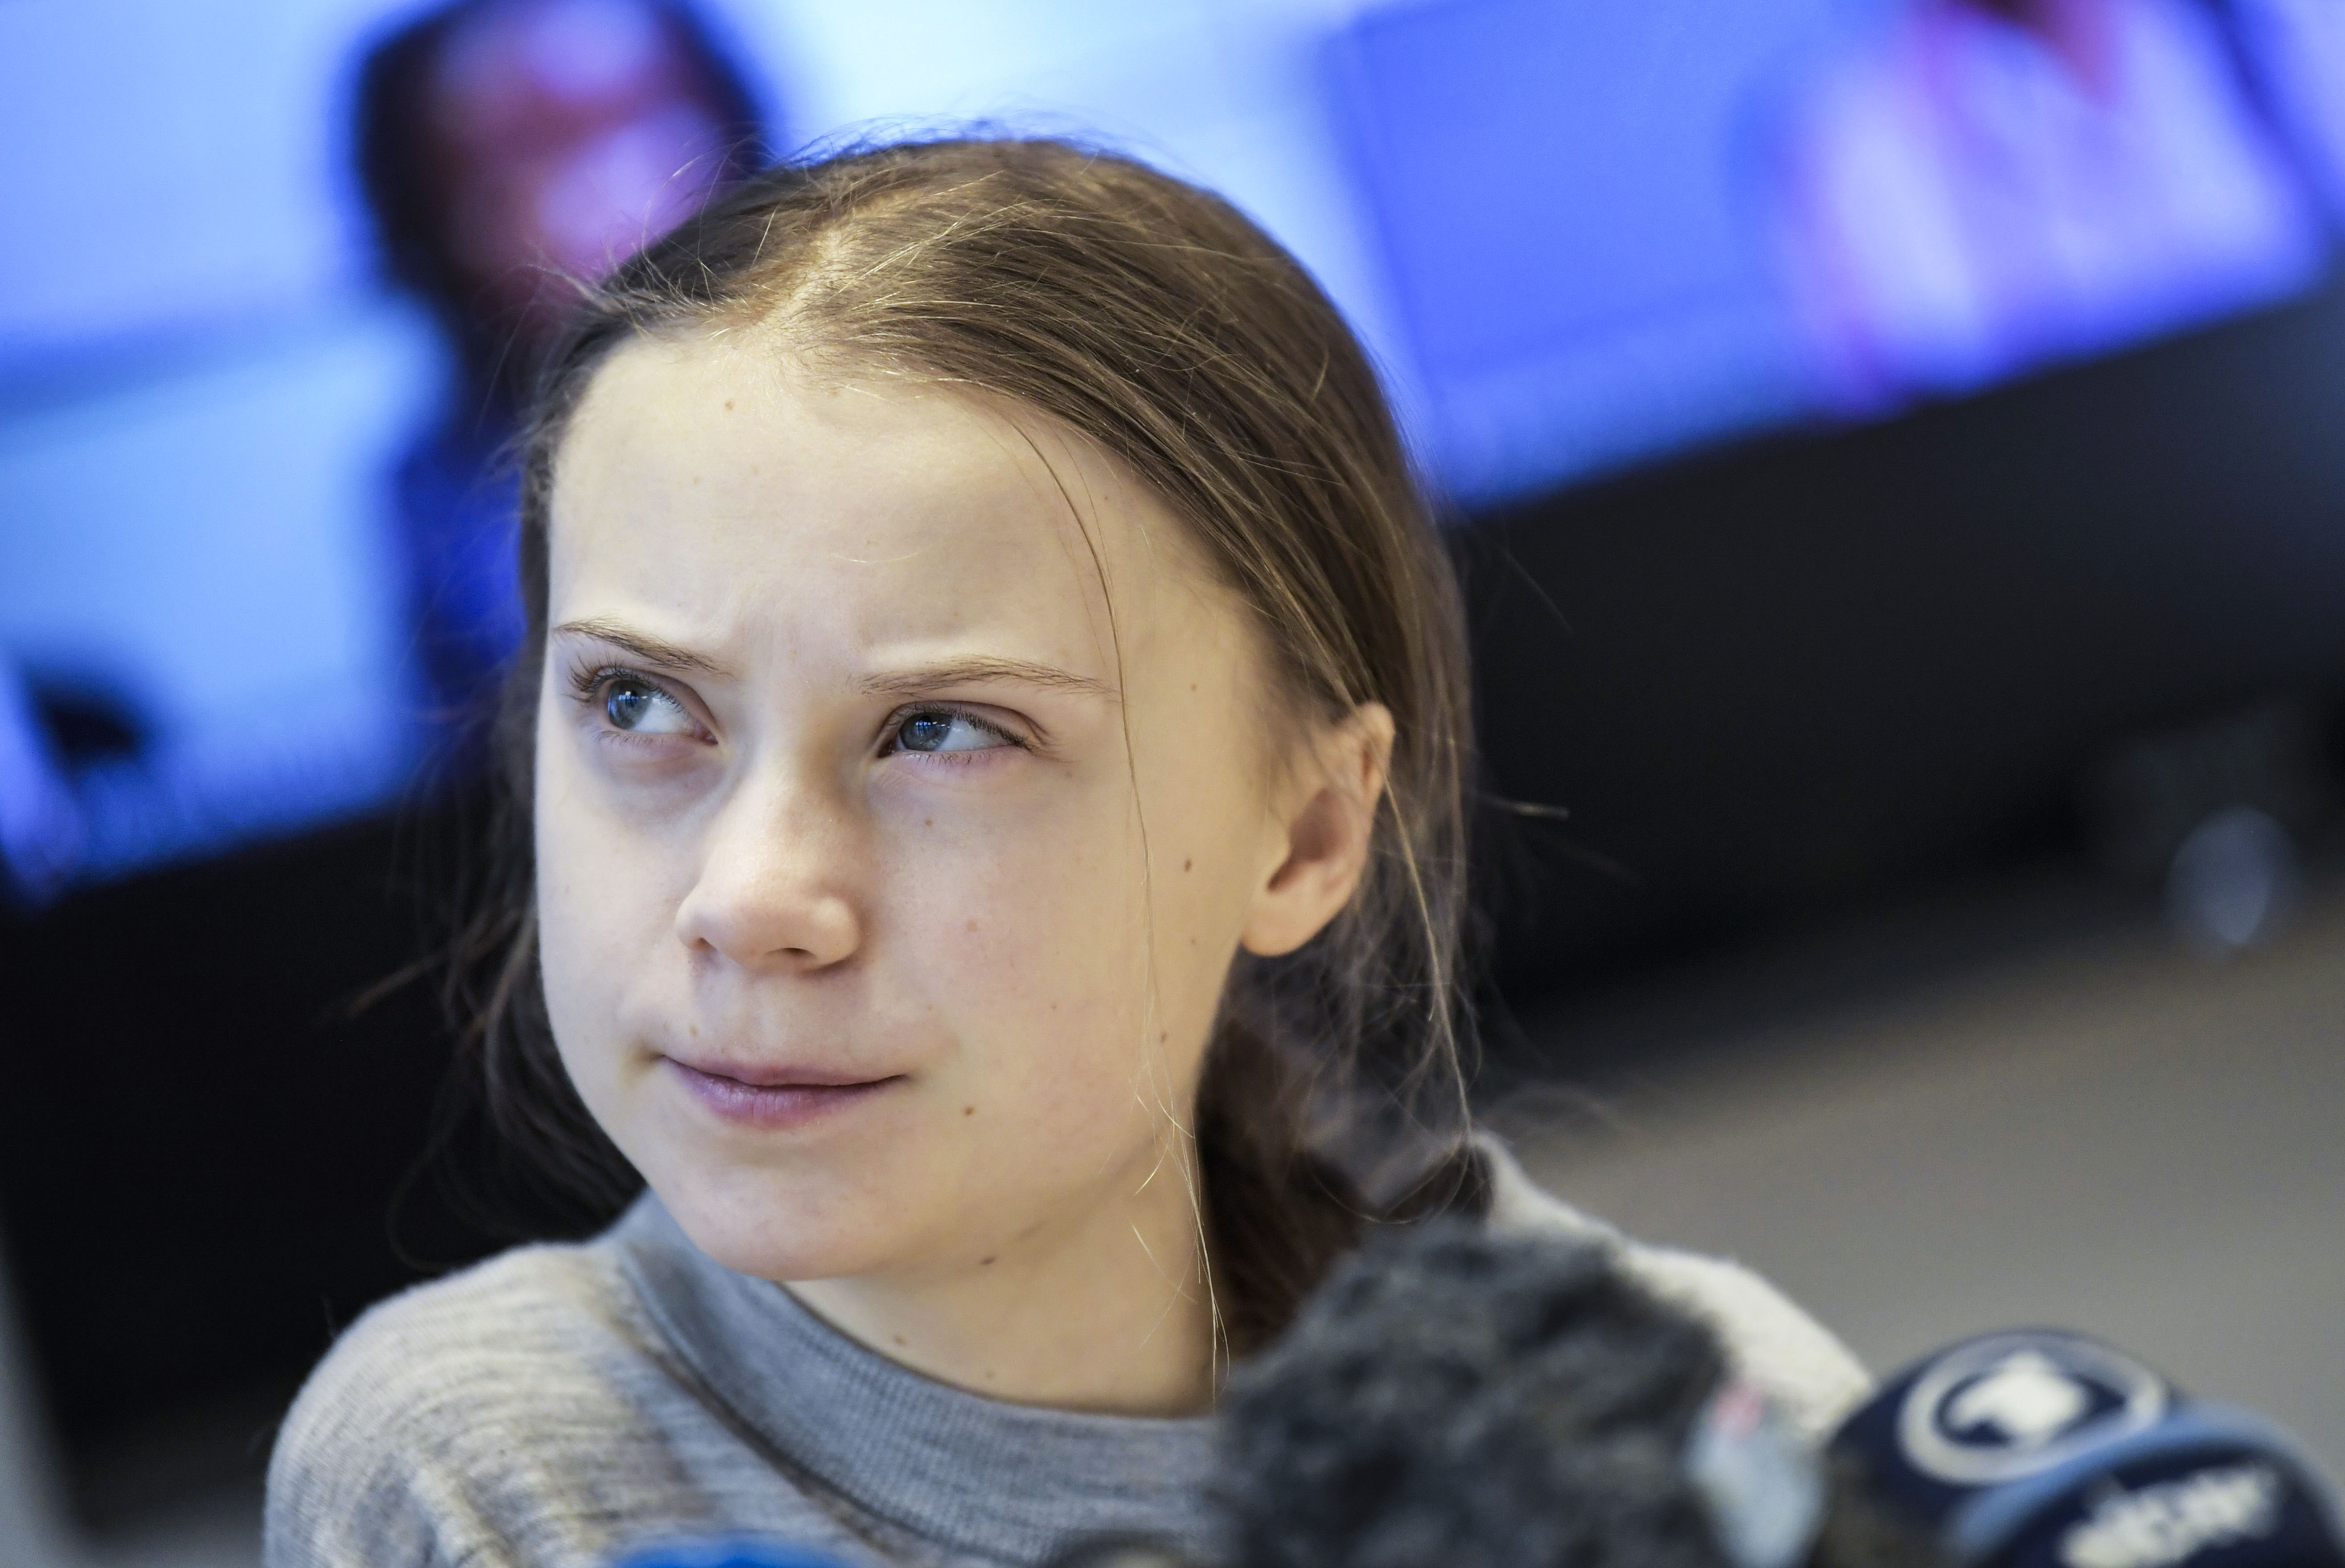 Compania petrolieră care a distribuit o ilustrație porno cu Greta Thunberg și-a cerut scuze